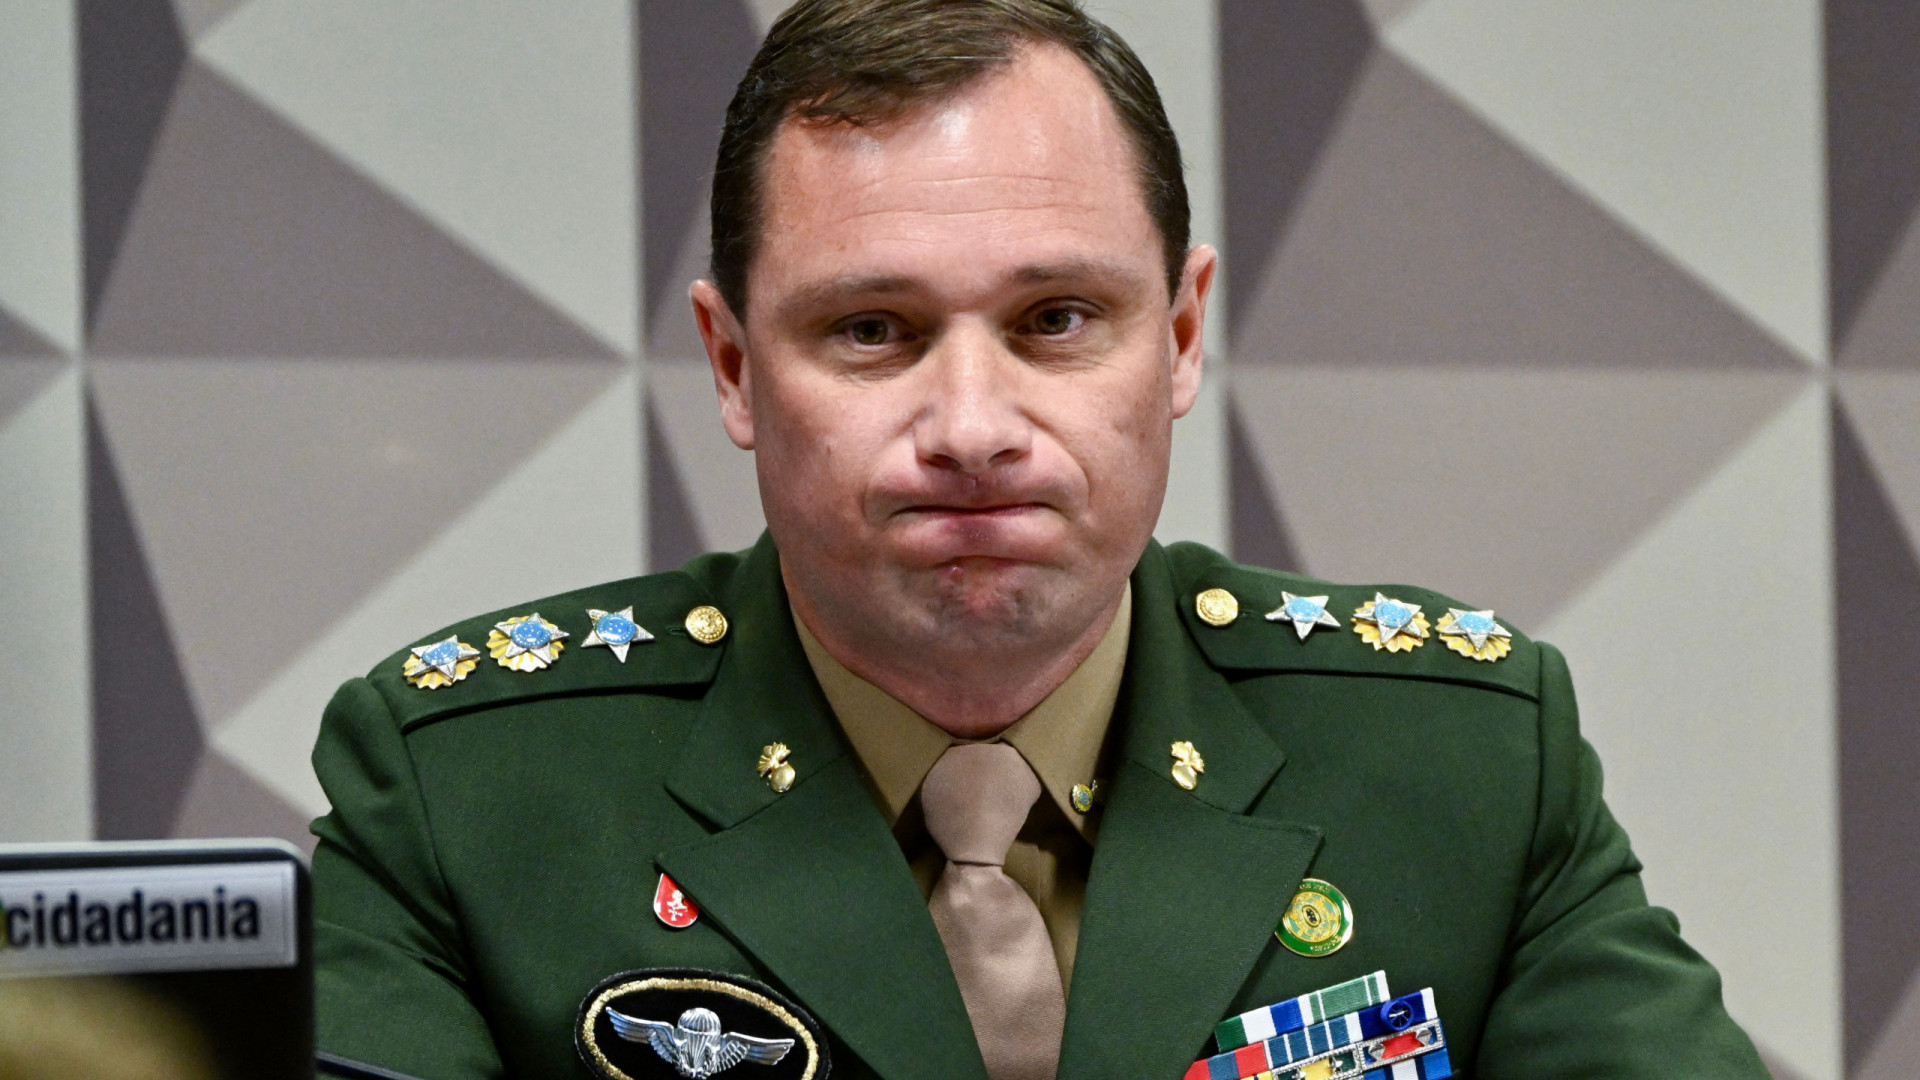 Cid relata à PF que Bolsonaro consultou militares sobre plano de golpe, diz site